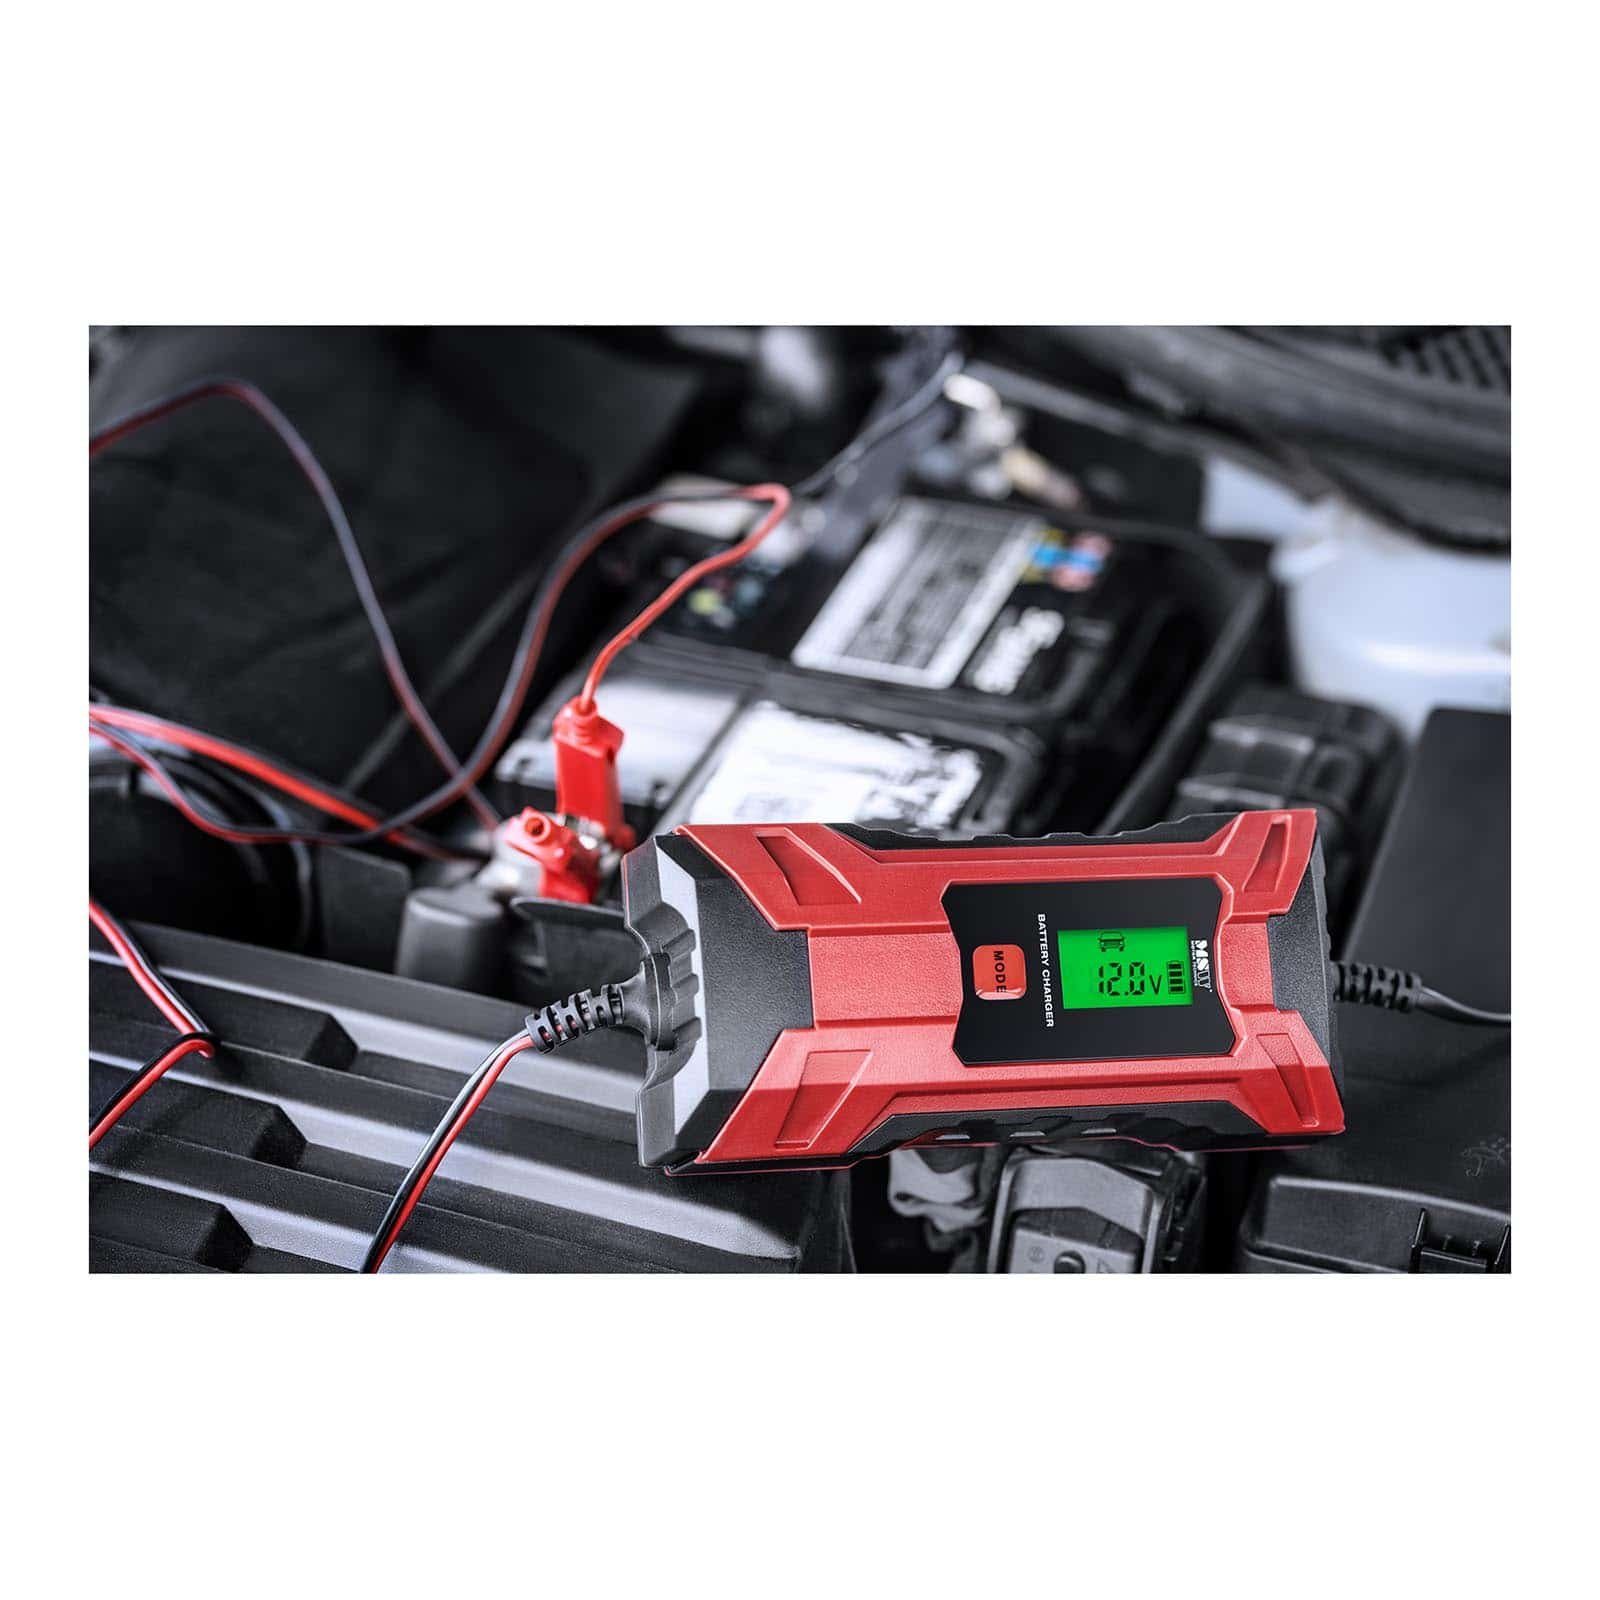 Autobatterie-Ladegerät Batterieladegerät 12V/4A Kfz MSW LCD 6V/2A Ladegerät Schnellladen Pkw Auto